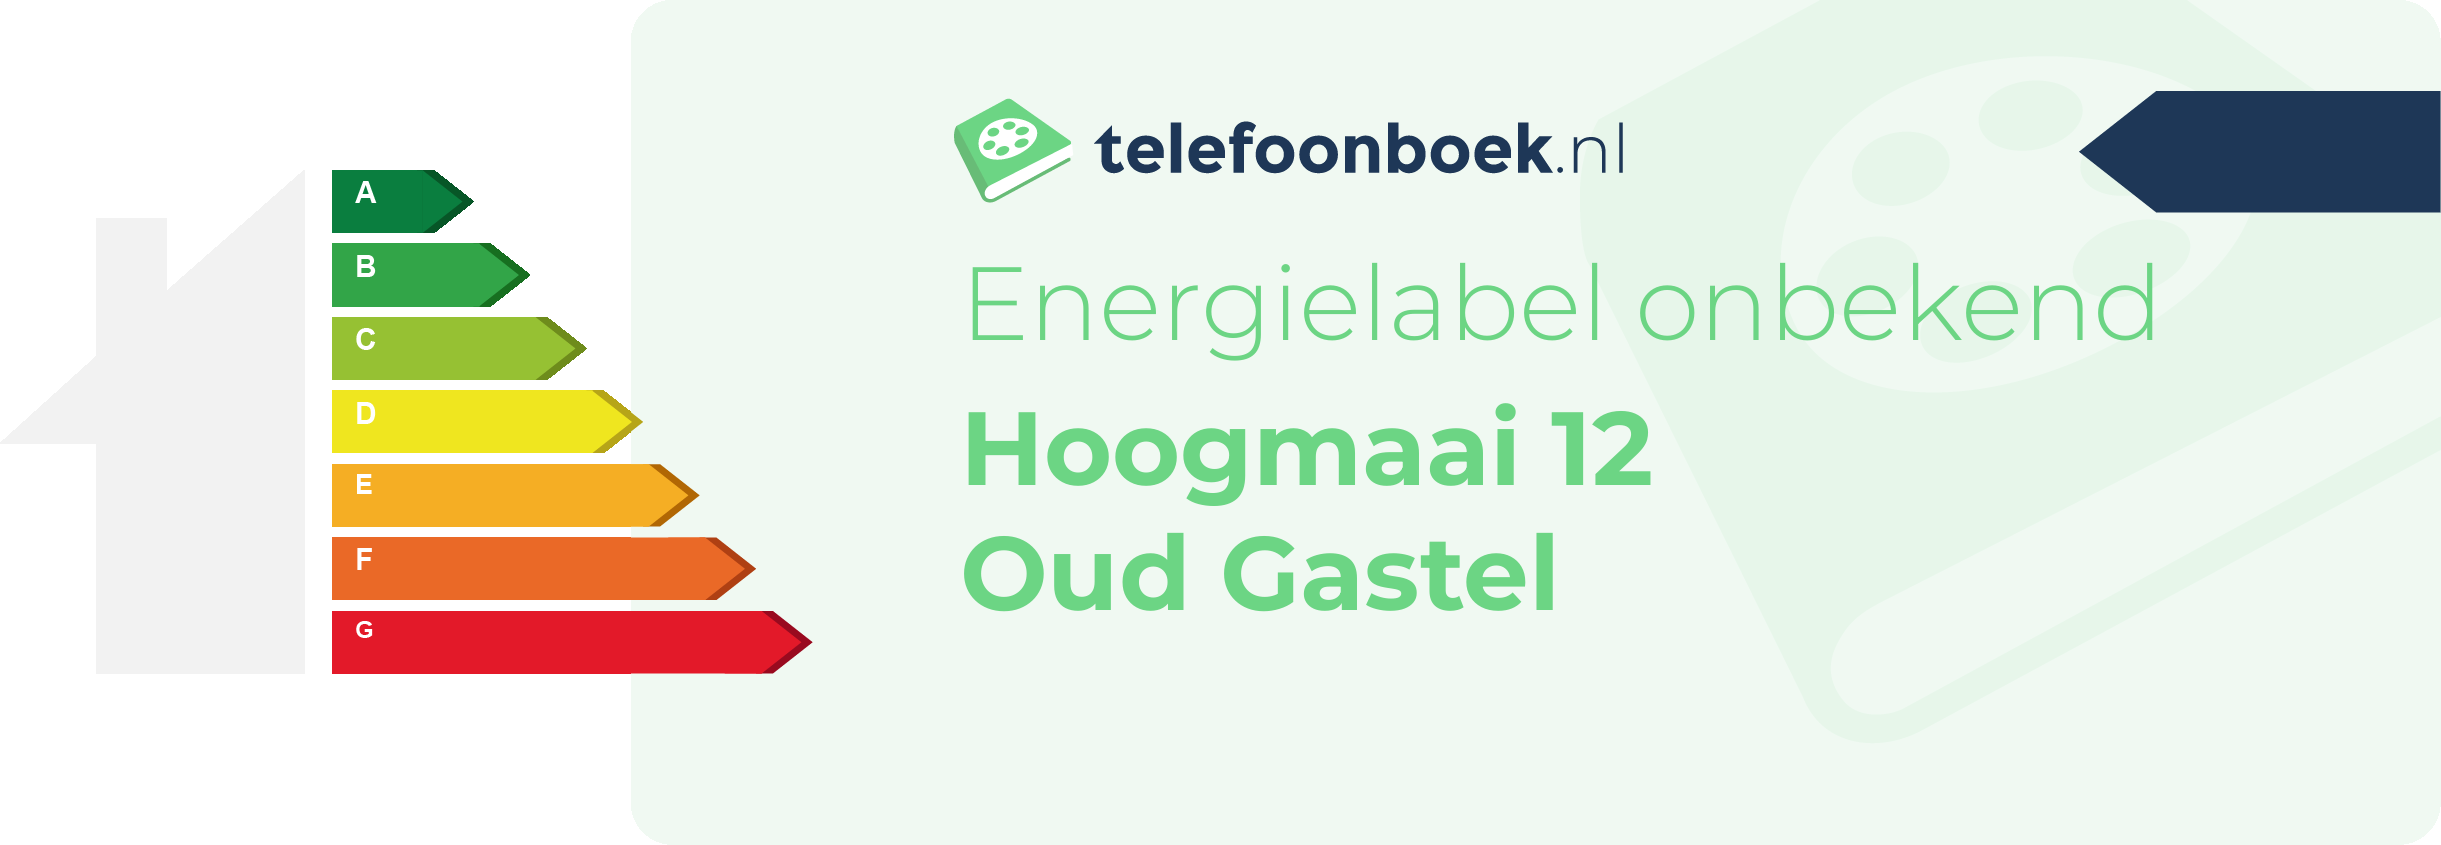 Energielabel Hoogmaai 12 Oud Gastel